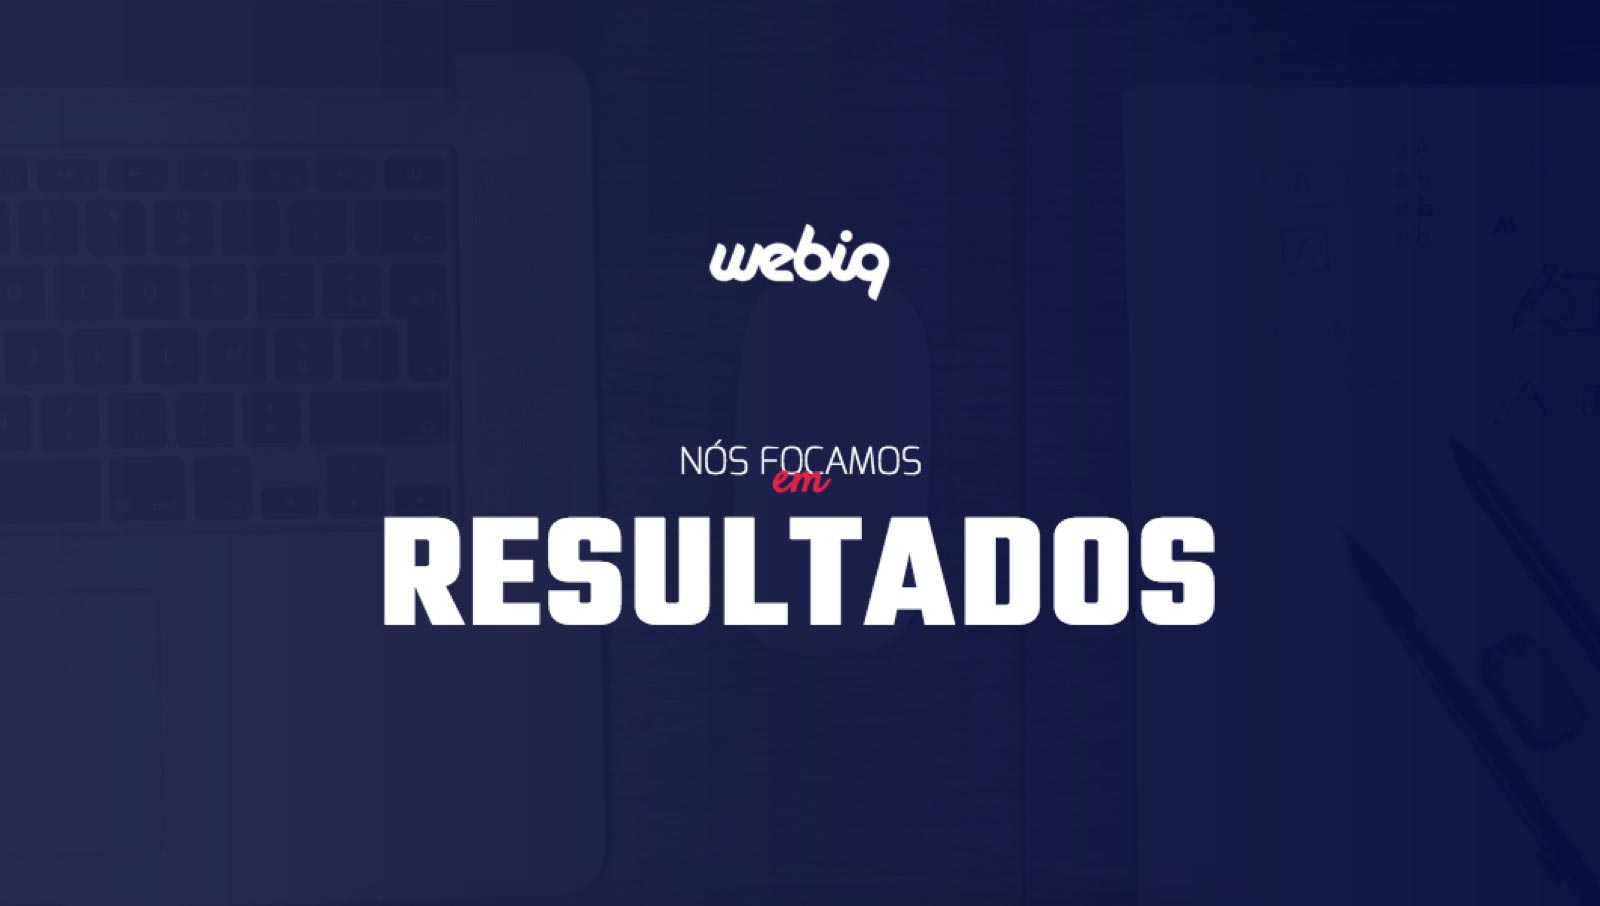 (c) Webiq.com.br